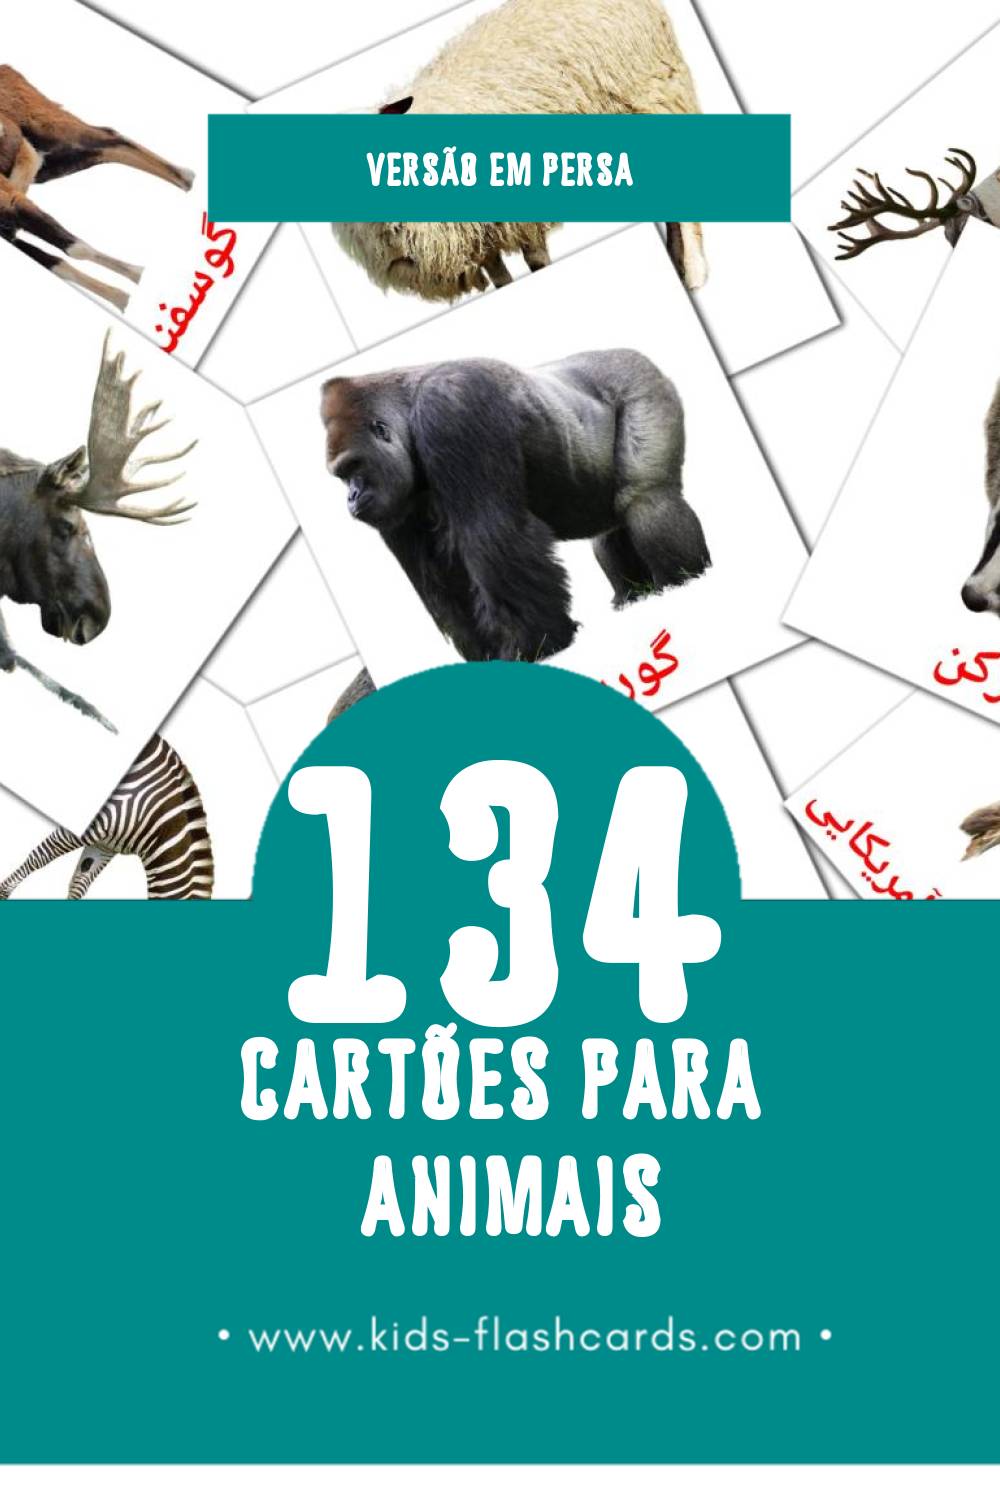 Flashcards de حیوانات Visuais para Toddlers (134 cartões em Persa)